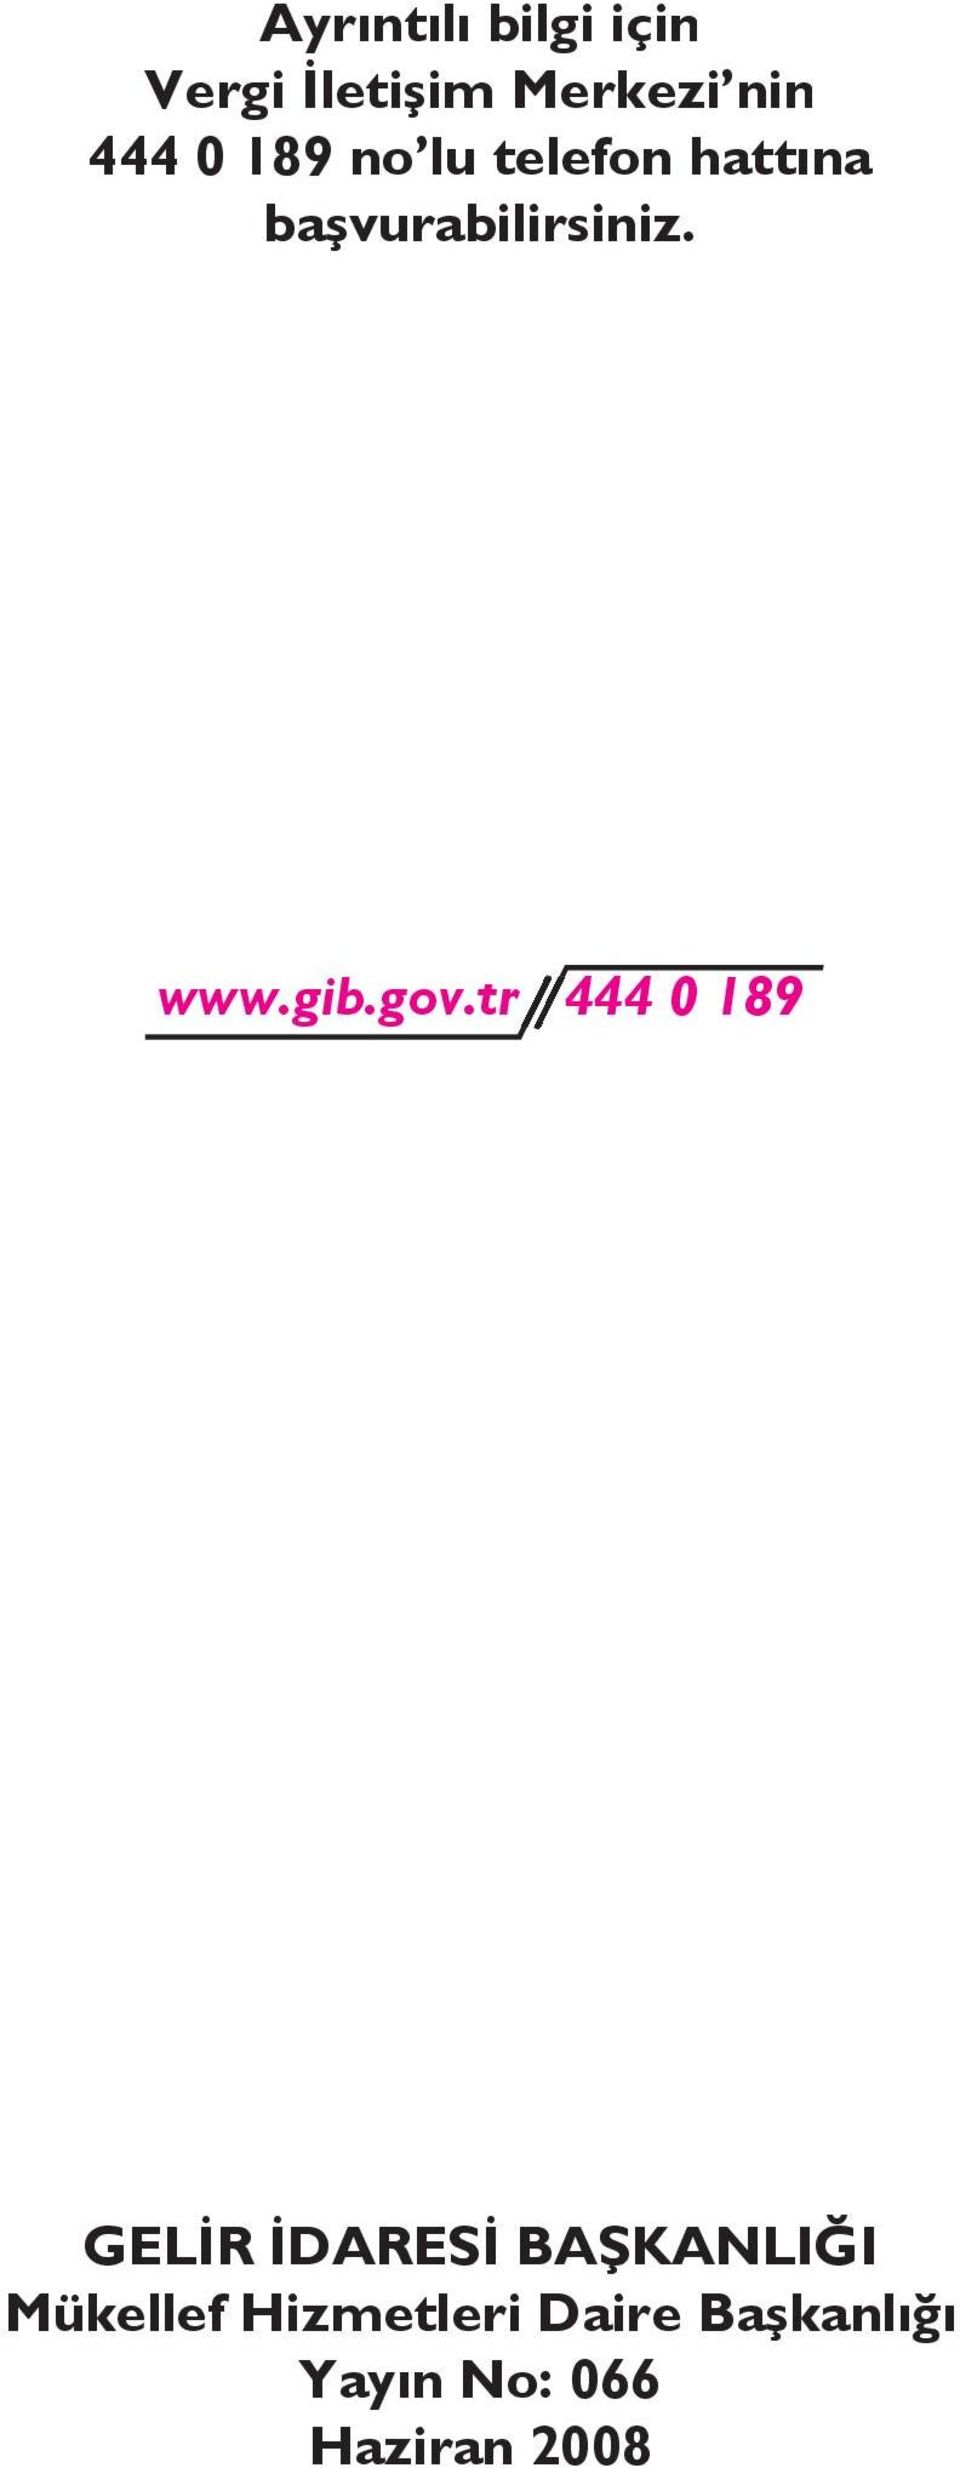 gib.gov.